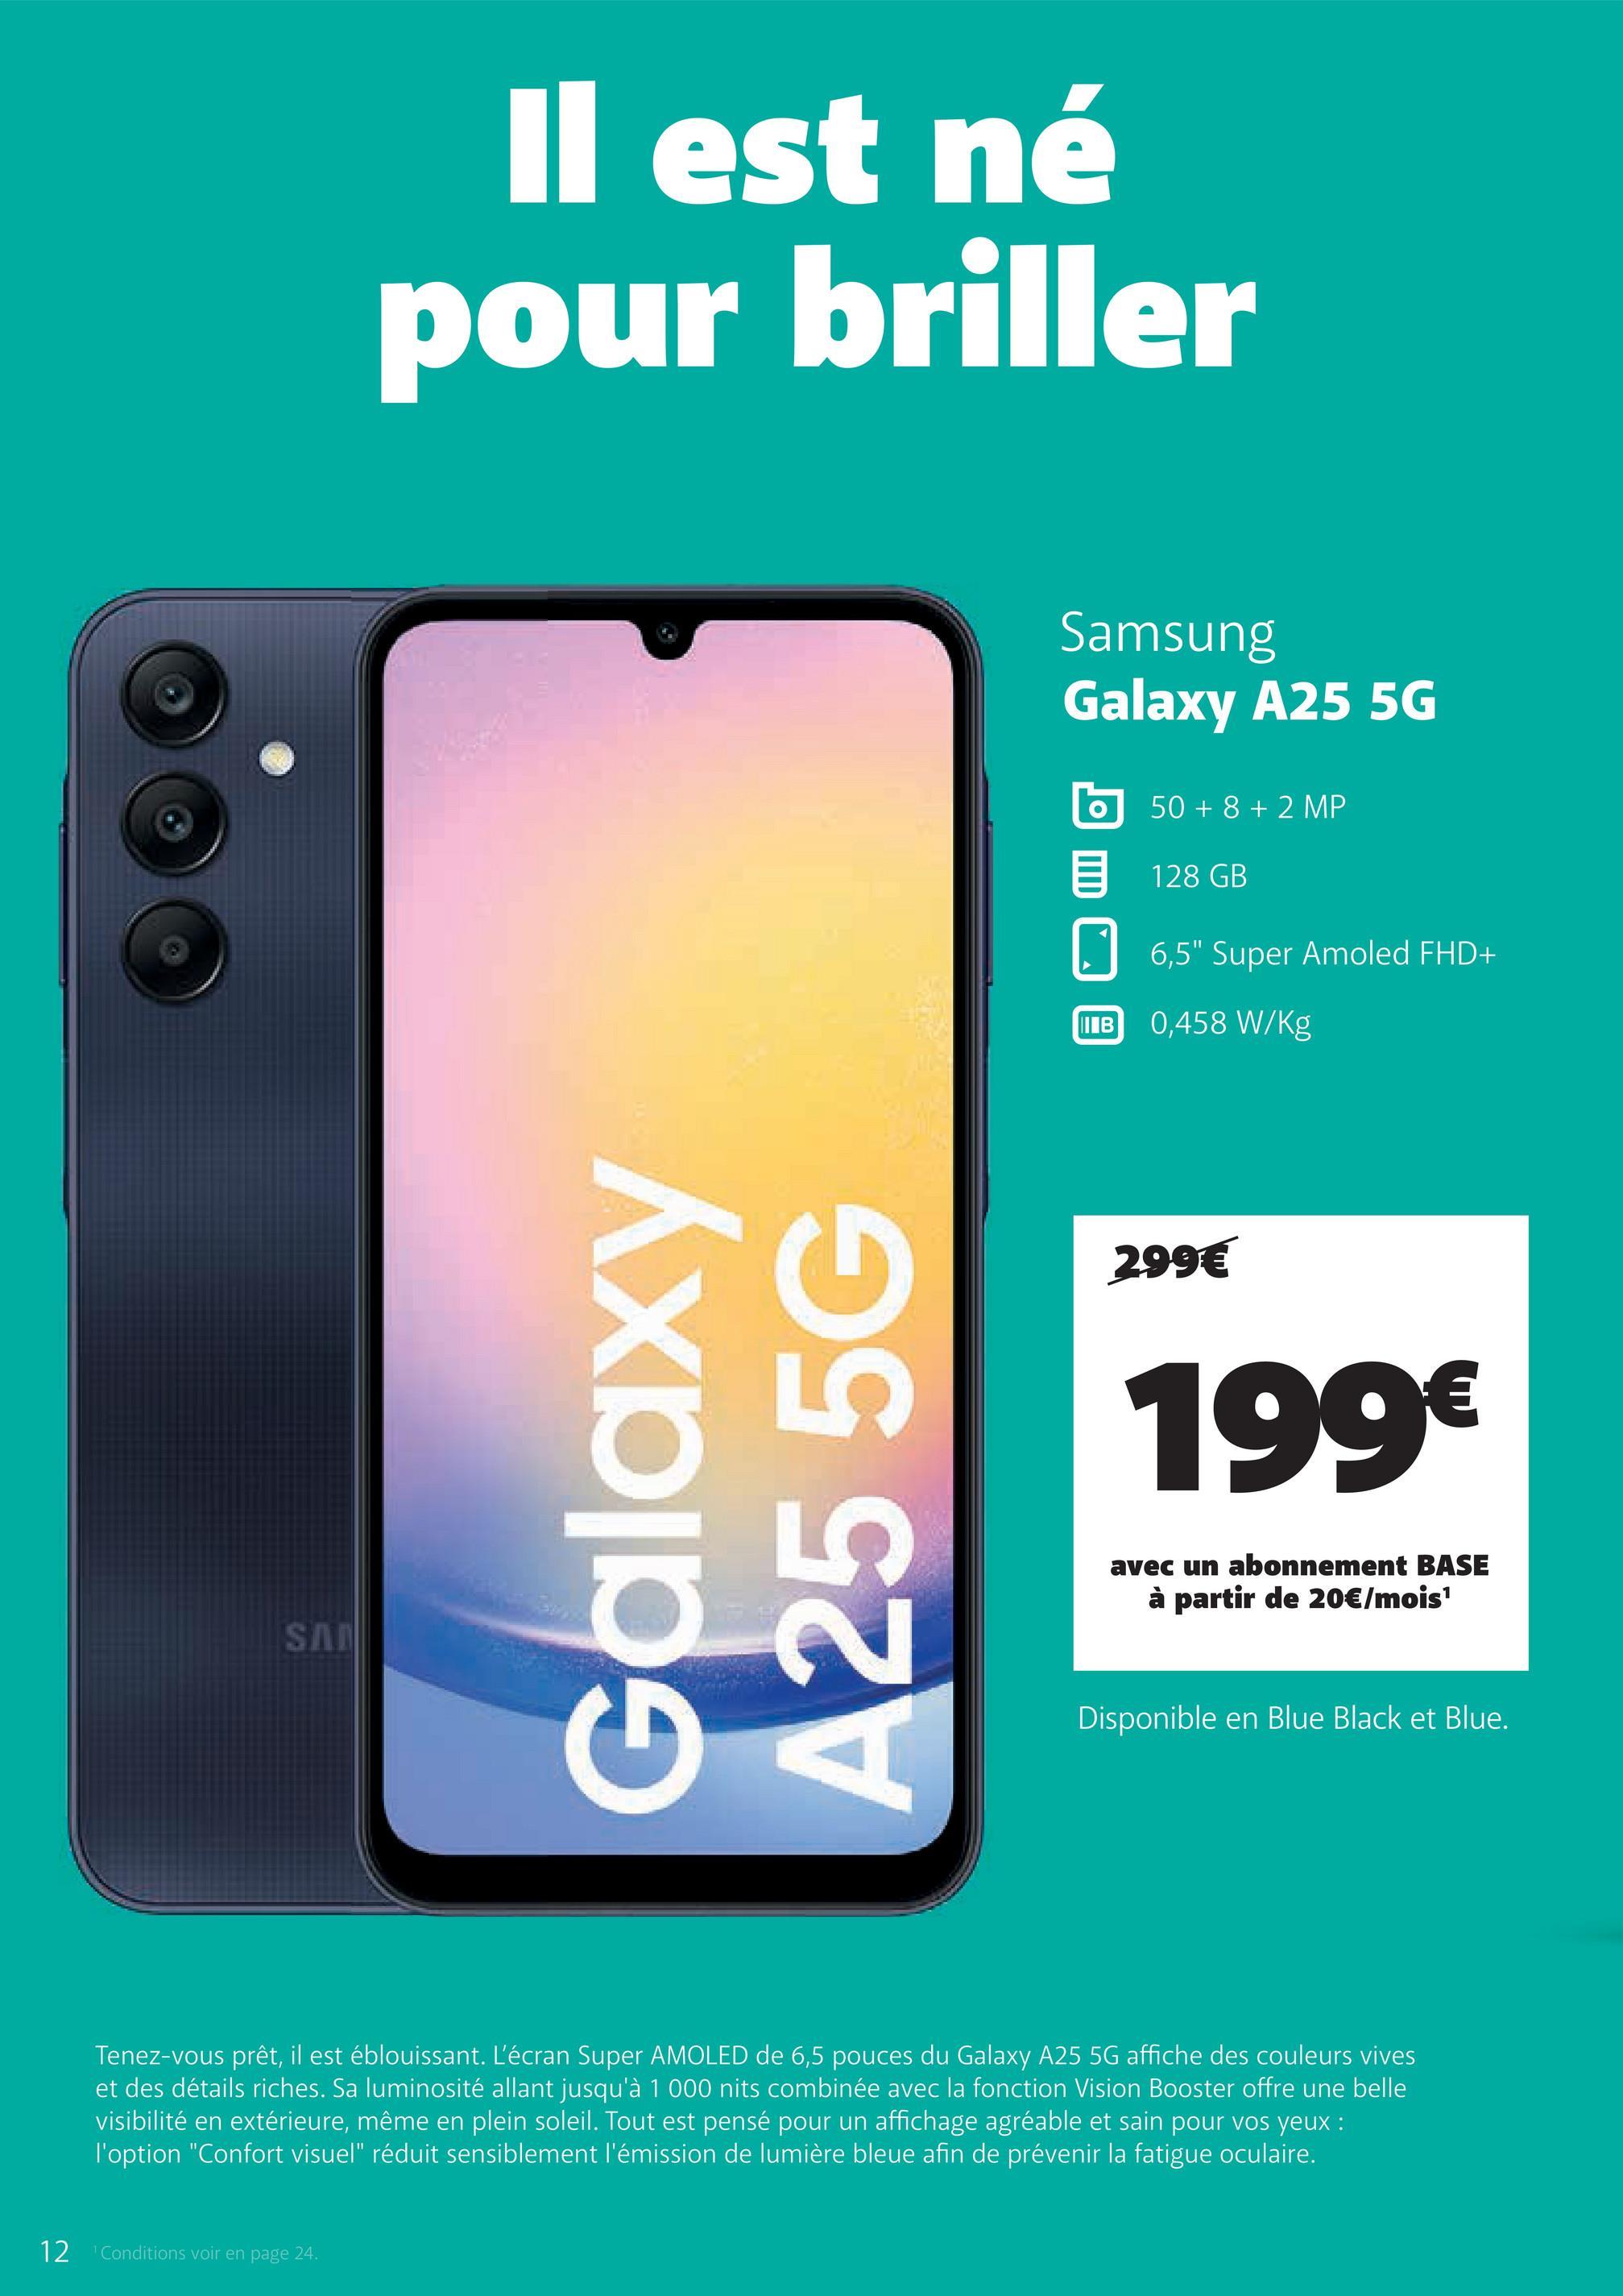 SA
Il est né
pour briller
Galaxy
A255G
Samsung
Galaxy A25 5G
50+8+2 MP
目 128 GB
☐
6,5" Super Amoled FHD+
IB 0,458 W/Kg
299€
199€
avec un abonnement BASE
à partir de 20€/mois¹
Disponible en Blue Black et Blue.
Tenez-vous prêt, il est éblouissant. L'écran Super AMOLED de 6,5 pouces du Galaxy A25 5G affiche des couleurs vives
et des détails riches. Sa luminosité allant jusqu'à 1 000 nits combinée avec la fonction Vision Booster offre une belle
visibilité en extérieure, même en plein soleil. Tout est pensé pour un affichage agréable et sain pour vos yeux :
l'option "Confort visuel" réduit sensiblement l'émission de lumière bleue afin de prévenir la fatigue oculaire.
12
Conditions voir en page 24.